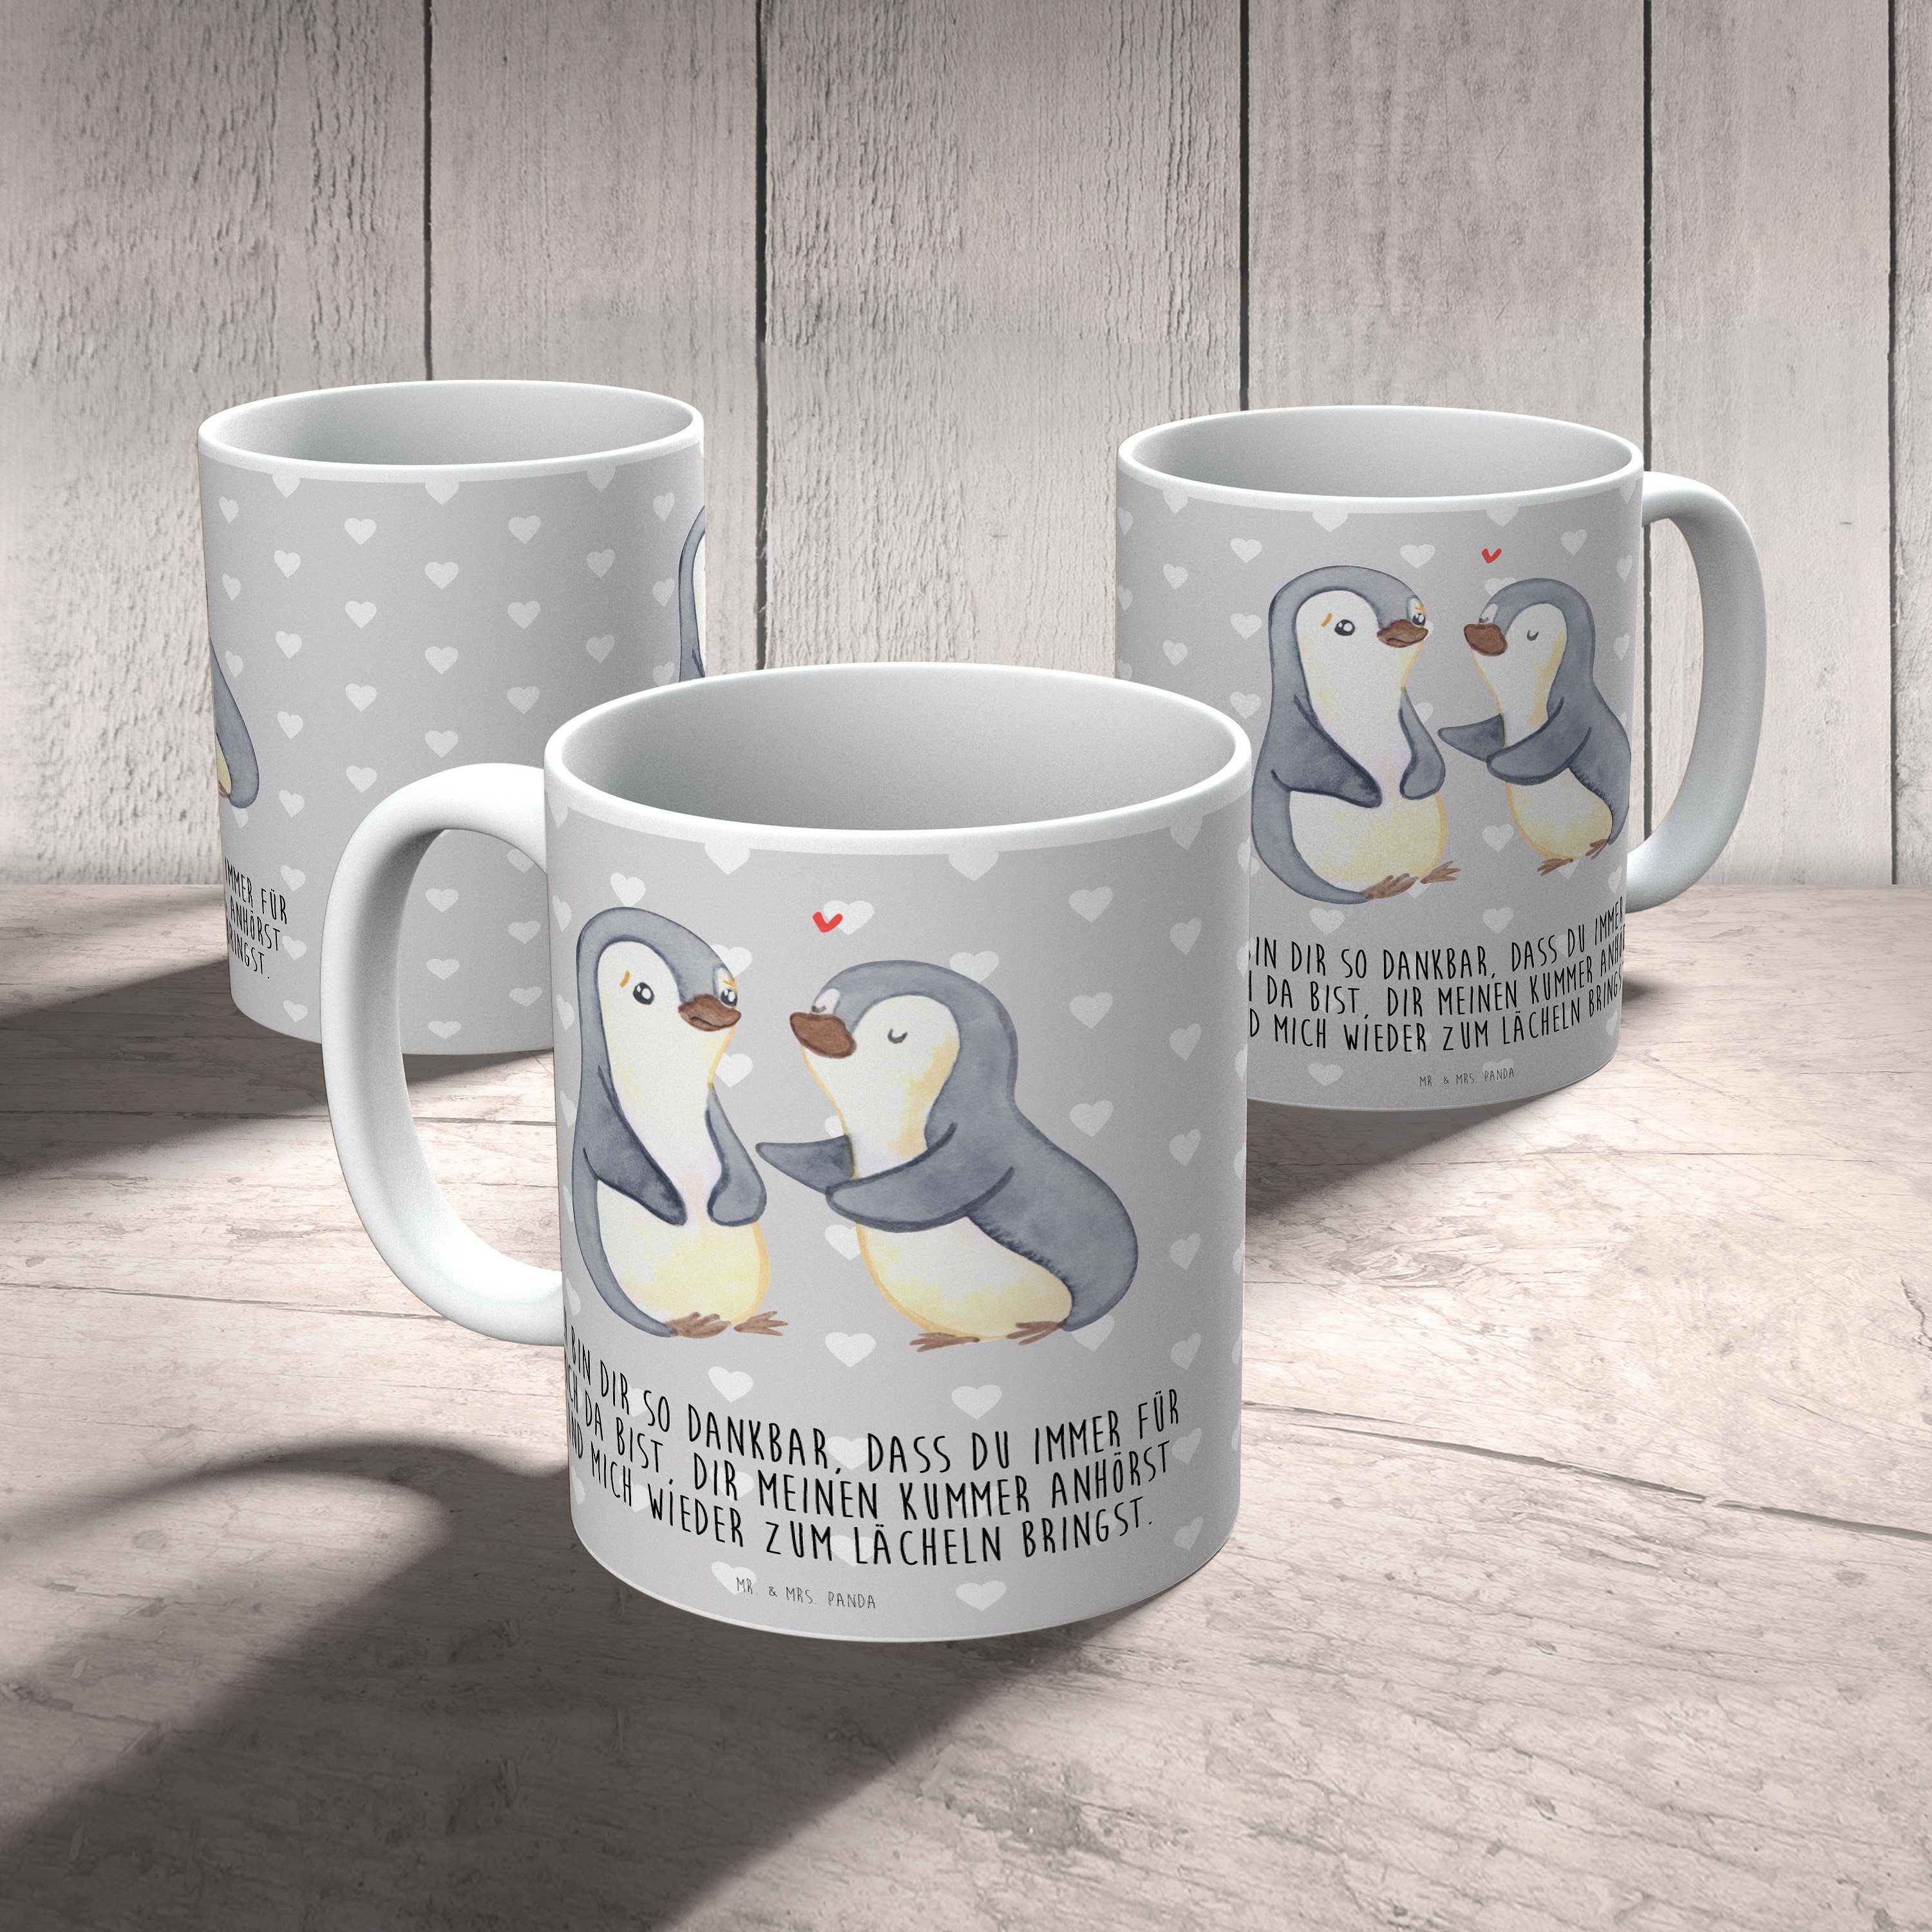 Mr. & Mrs. Grau Keramik Li, - - Pastell Tasse Panda Geschenk, Tasse, Liebesgeschenk, trösten Pinguine